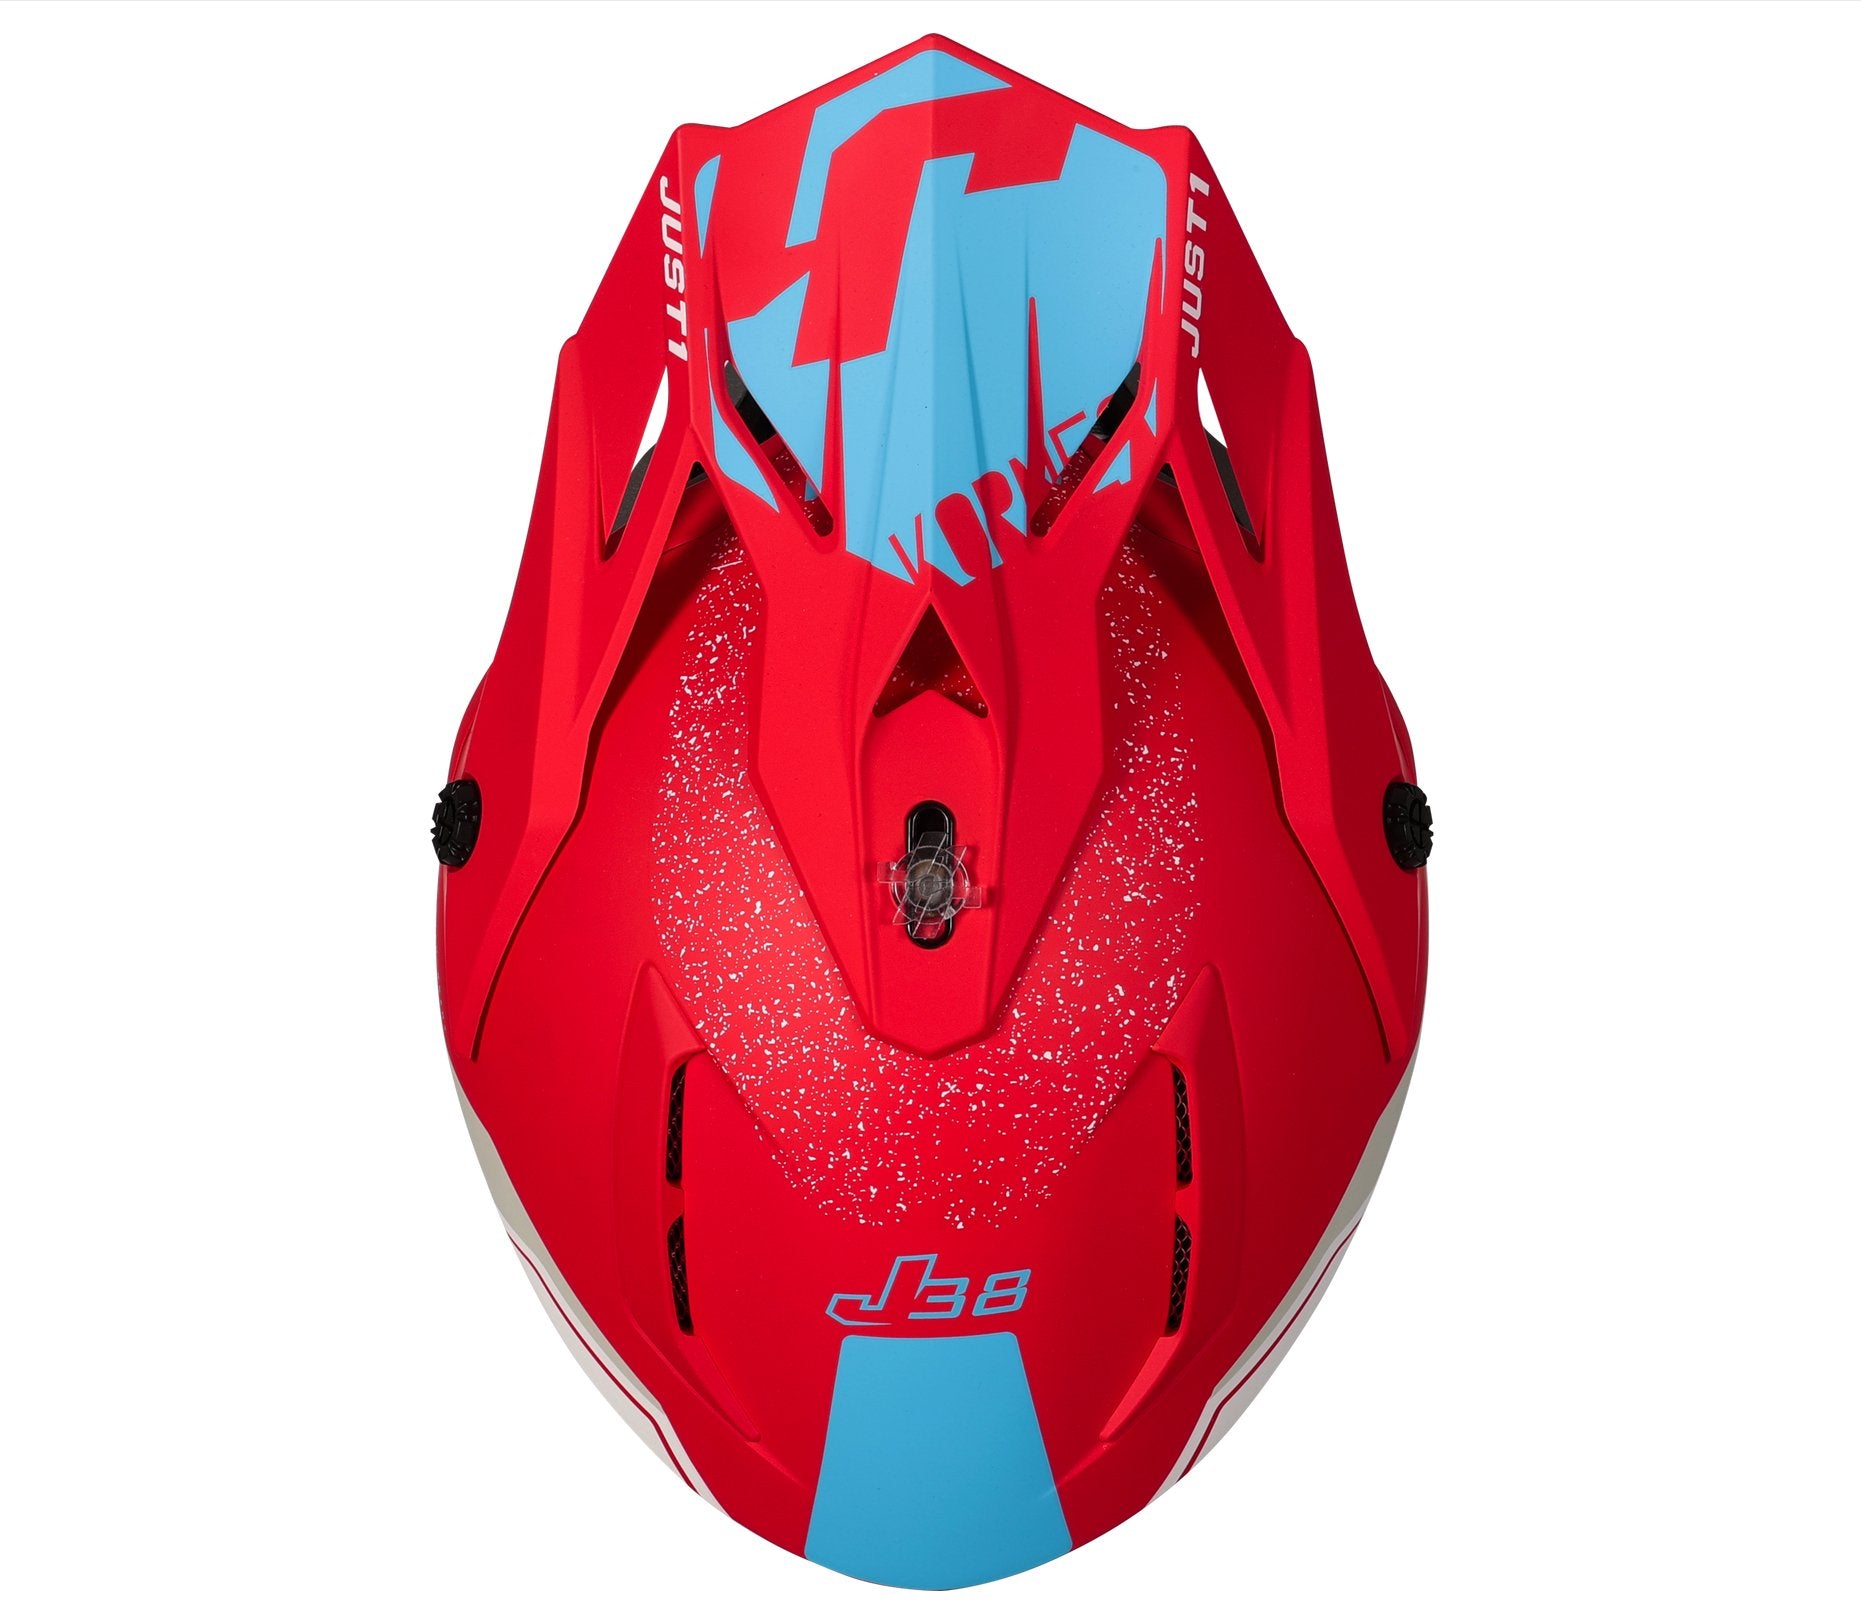 Just1 Motocross Helmet | J38 Korner Red Light Blue White - Just1